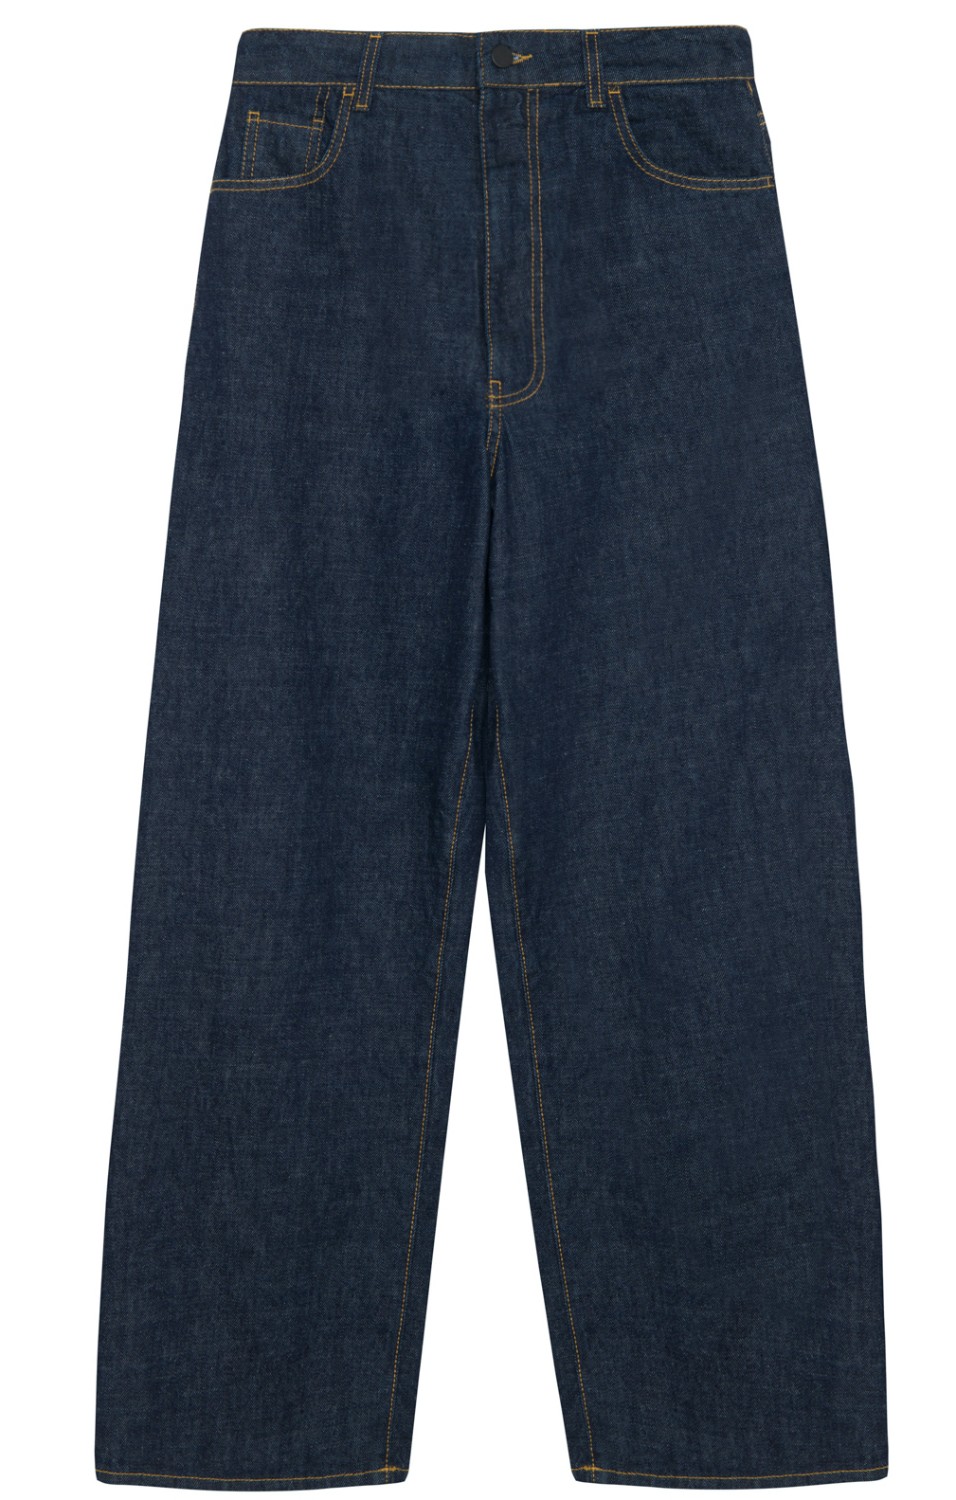 shop Tela  Pantaloni: Pantaloni Tela, jeans Ninfea, vita alta, gamba ampia e stretta infondo, tasche frontali e posteriori, cuciture a contrasto.

Composizione: 100% cotone. number 2641